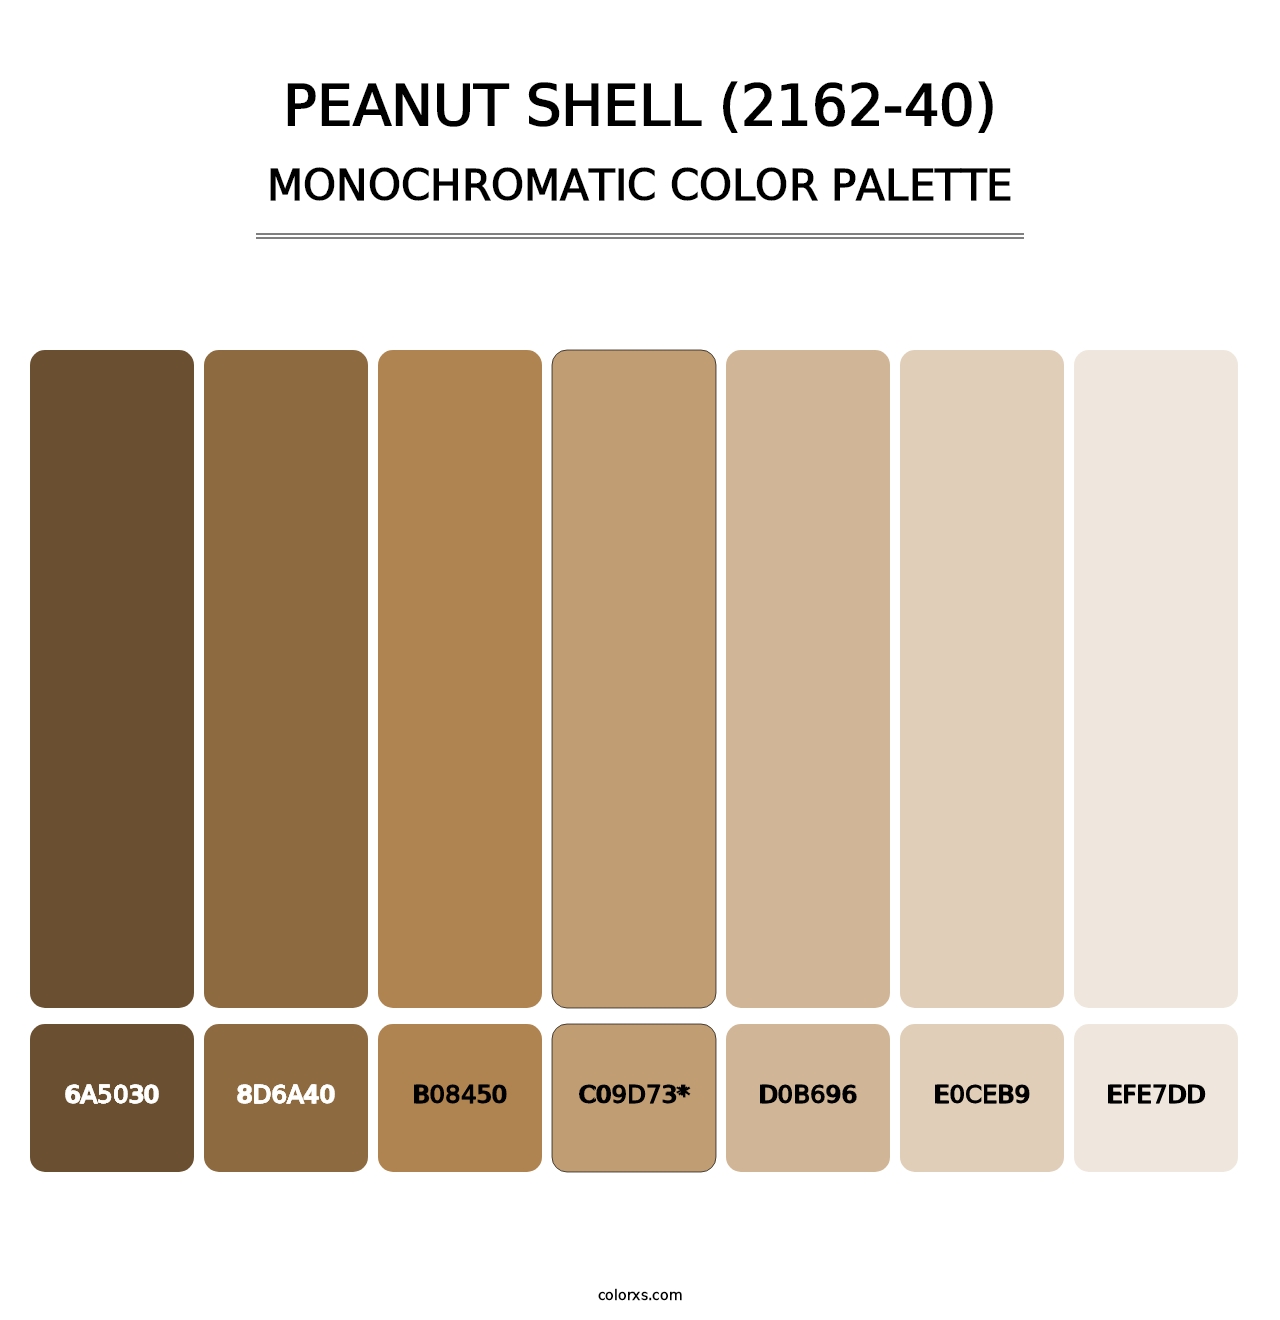 Peanut Shell (2162-40) - Monochromatic Color Palette